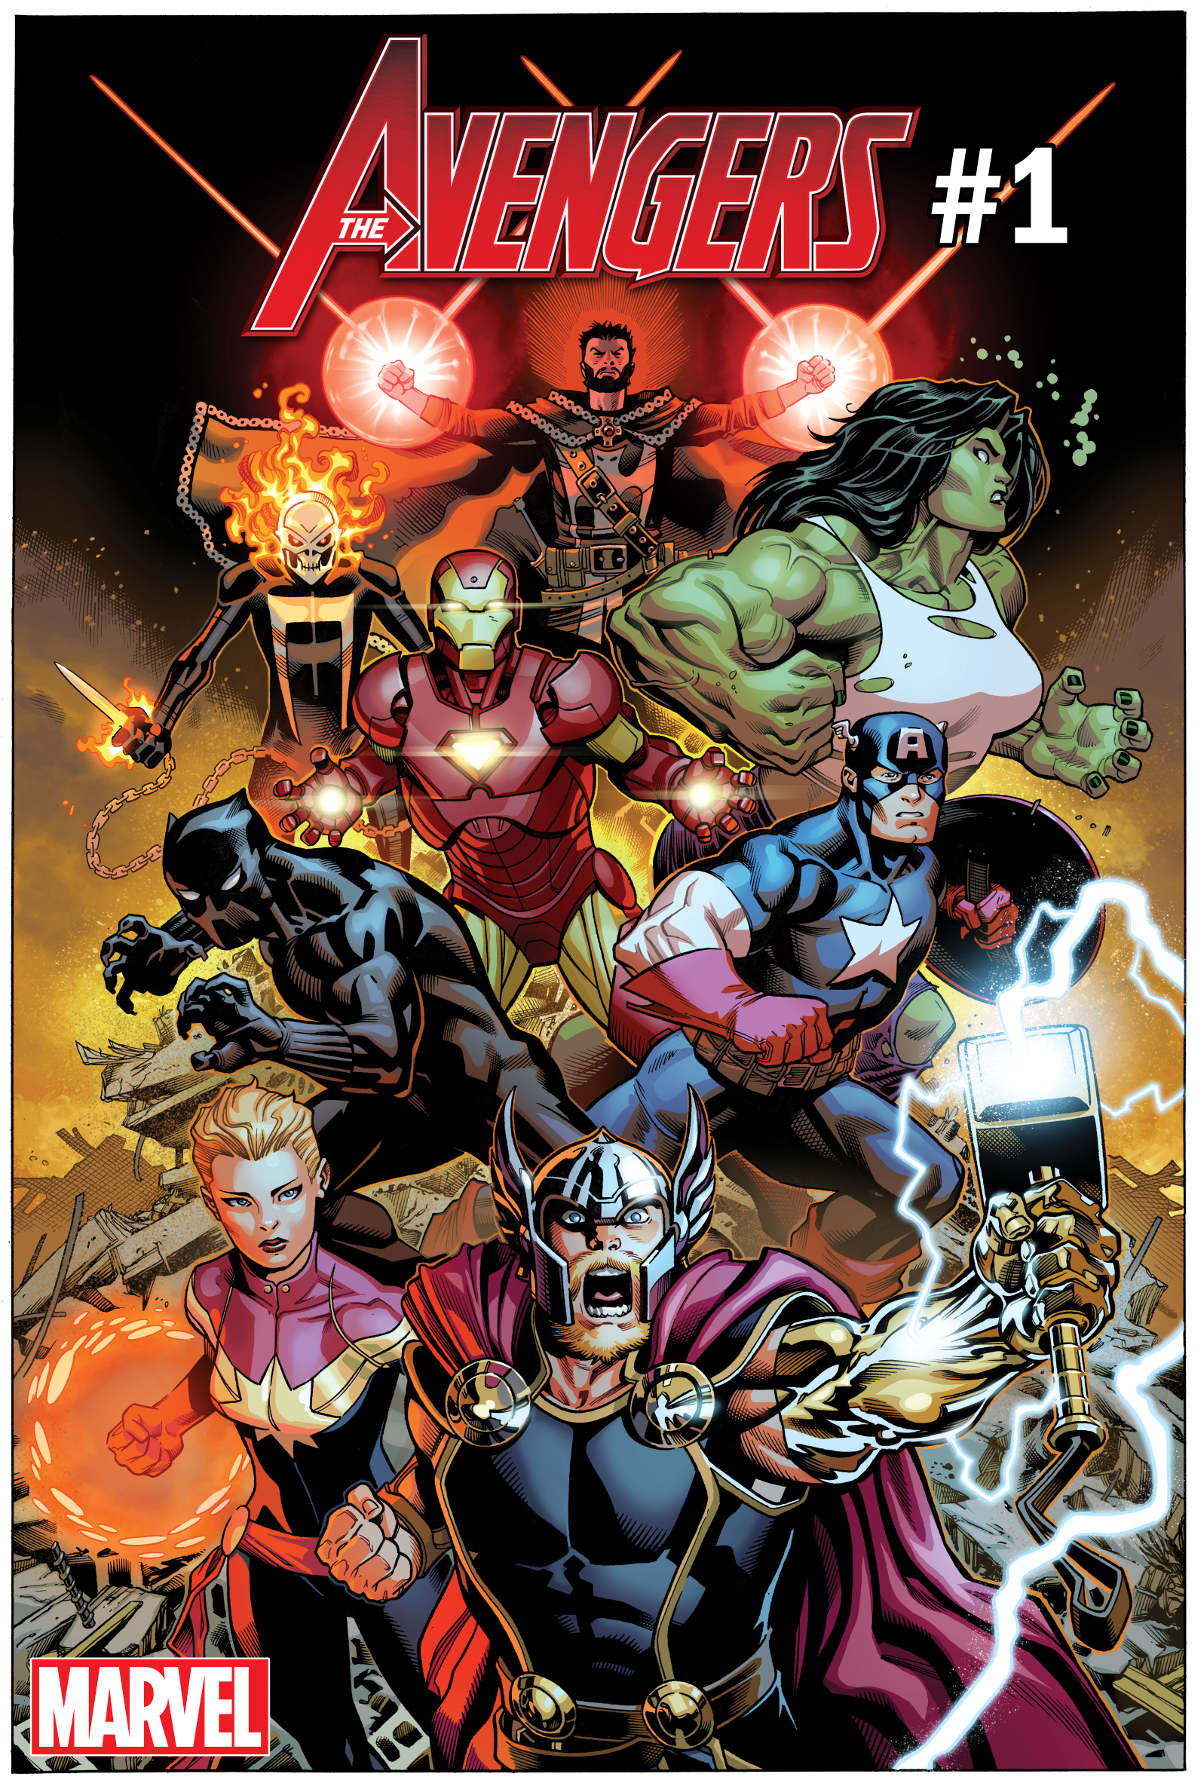 Novo começo para a Marvel em 2018 - Avengers #1